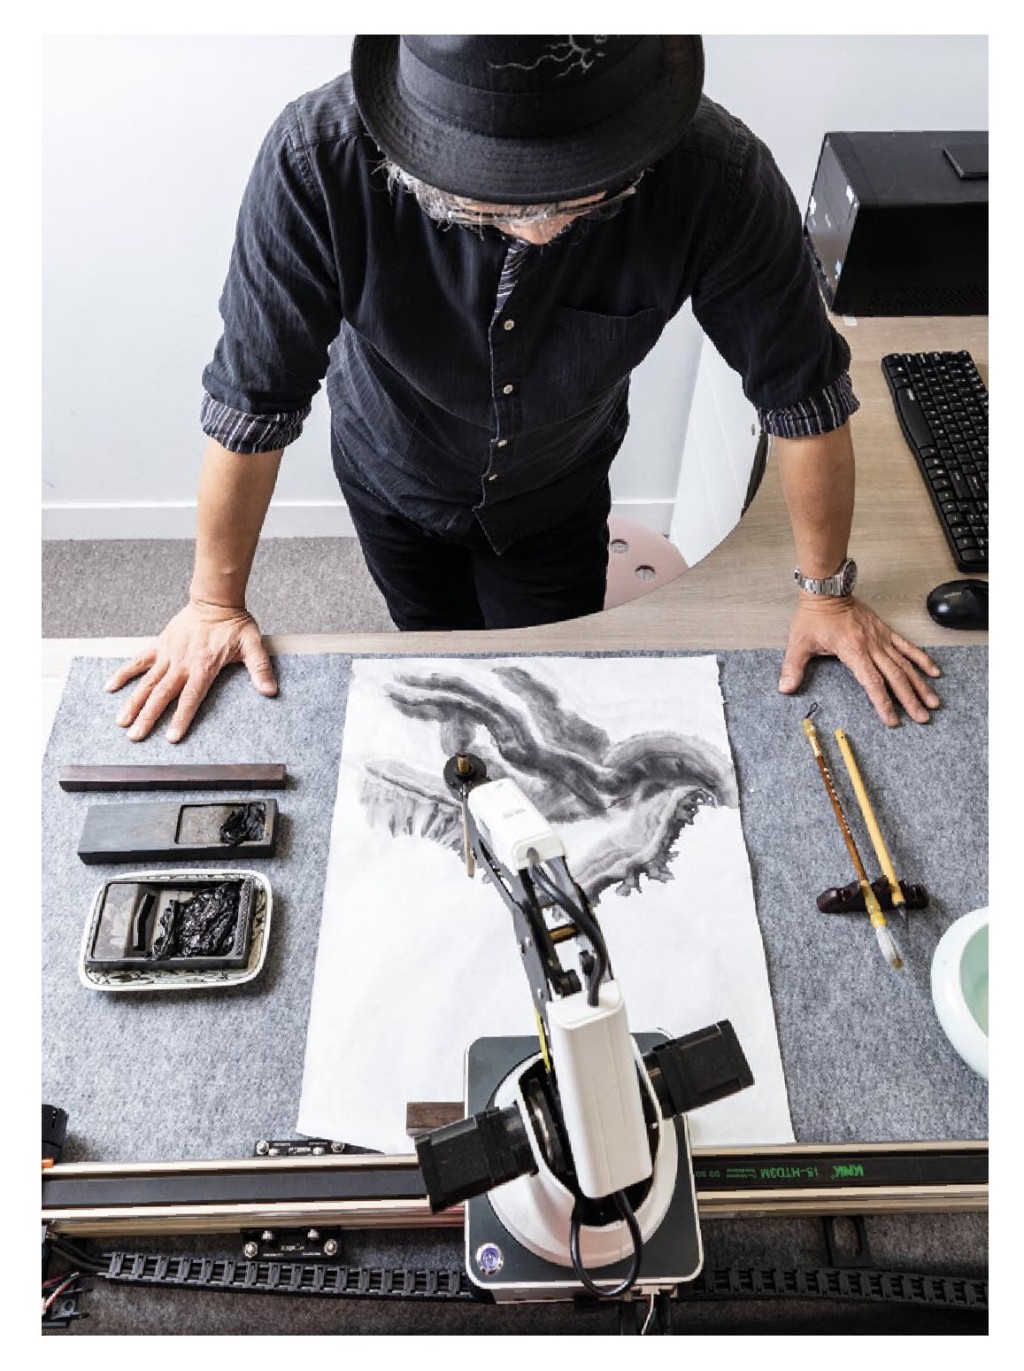 黄宏达创作了世界首个人工智能水墨艺术家A.I. Gemini（图片来源：黄宏达）  ​